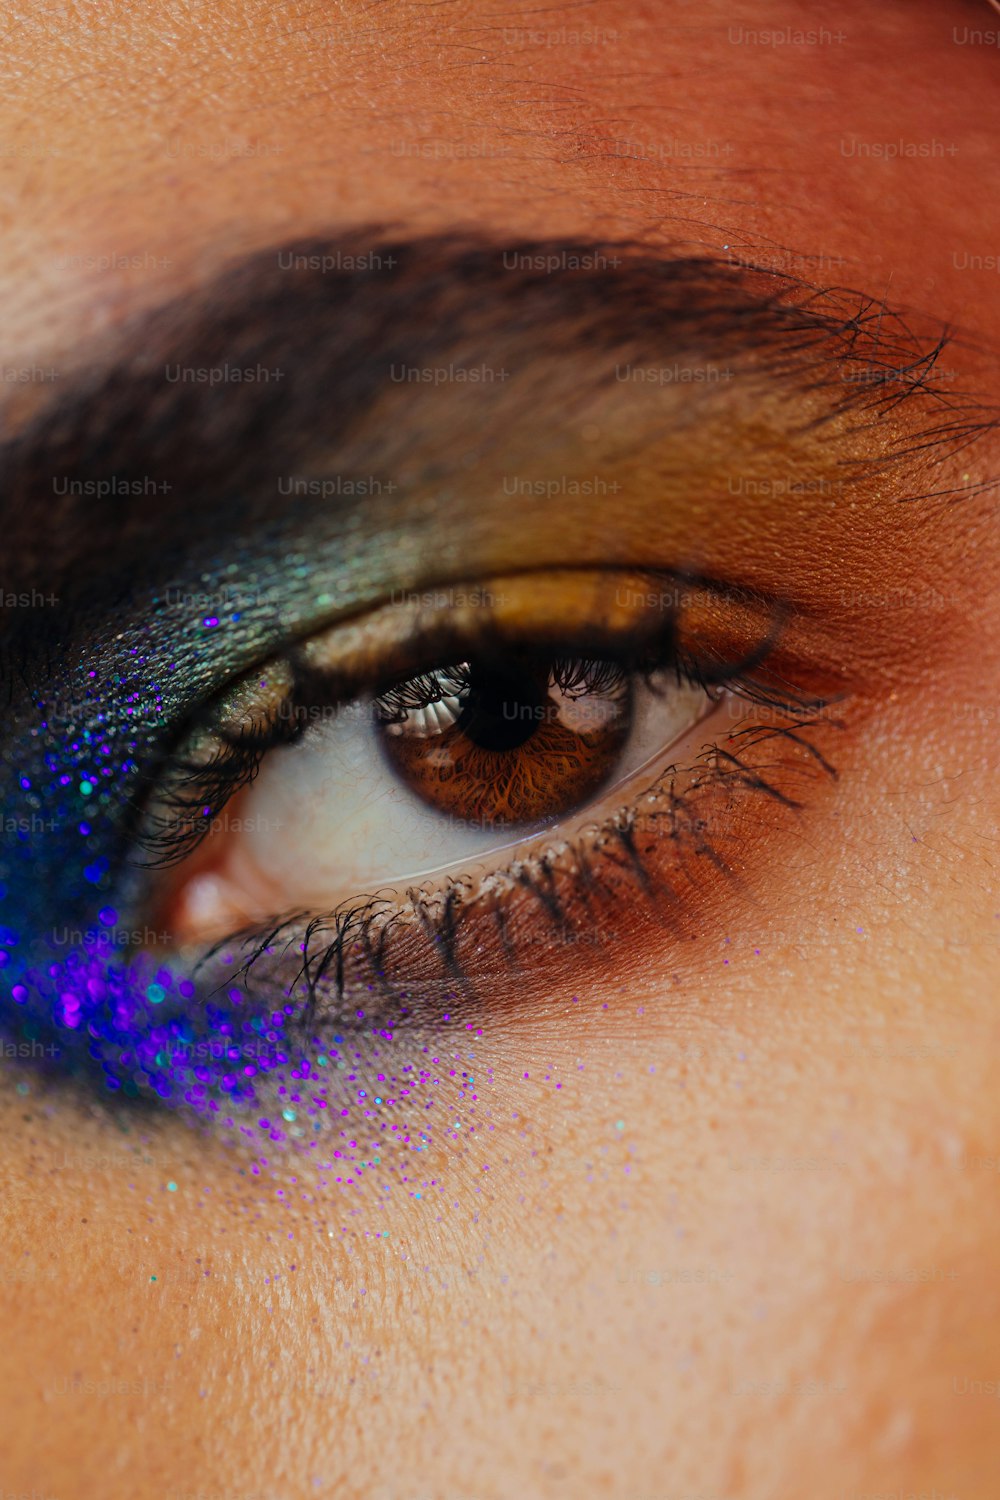 eine Nahaufnahme des Auges einer Person mit einem blauen und violetten Lidschatten